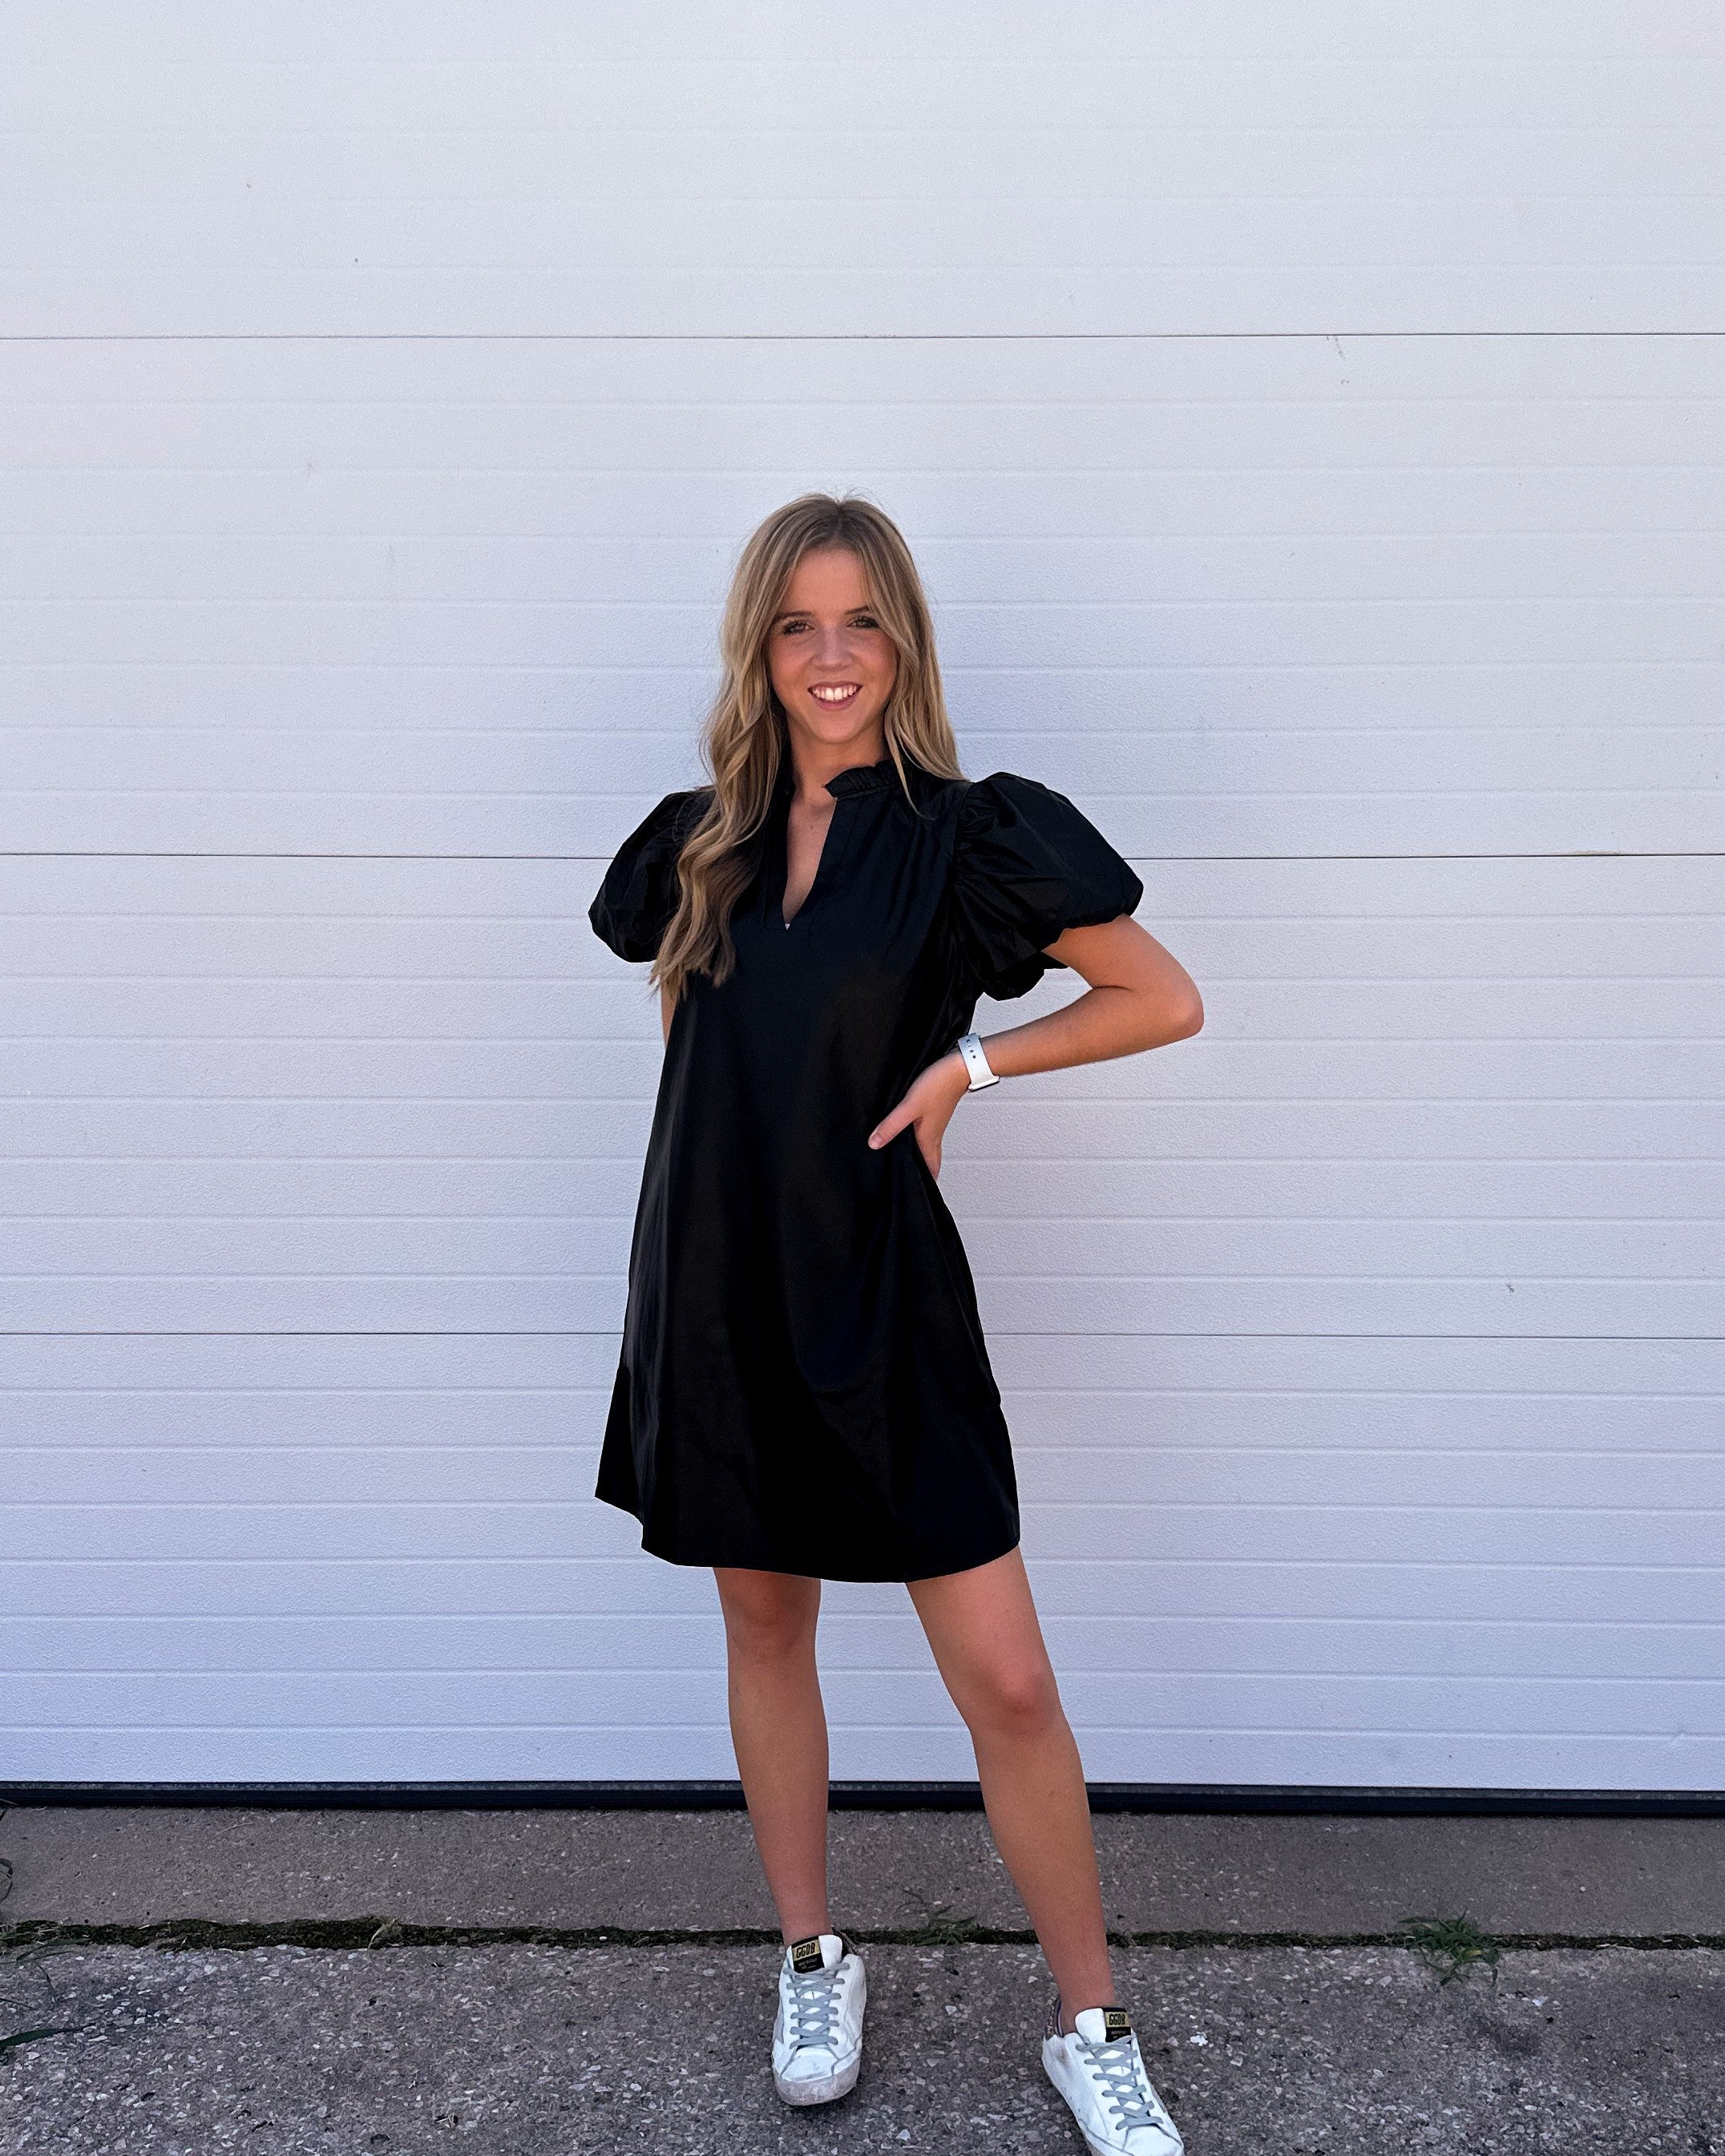 The Kaylee Black Pleather Puff Sleeve Dress